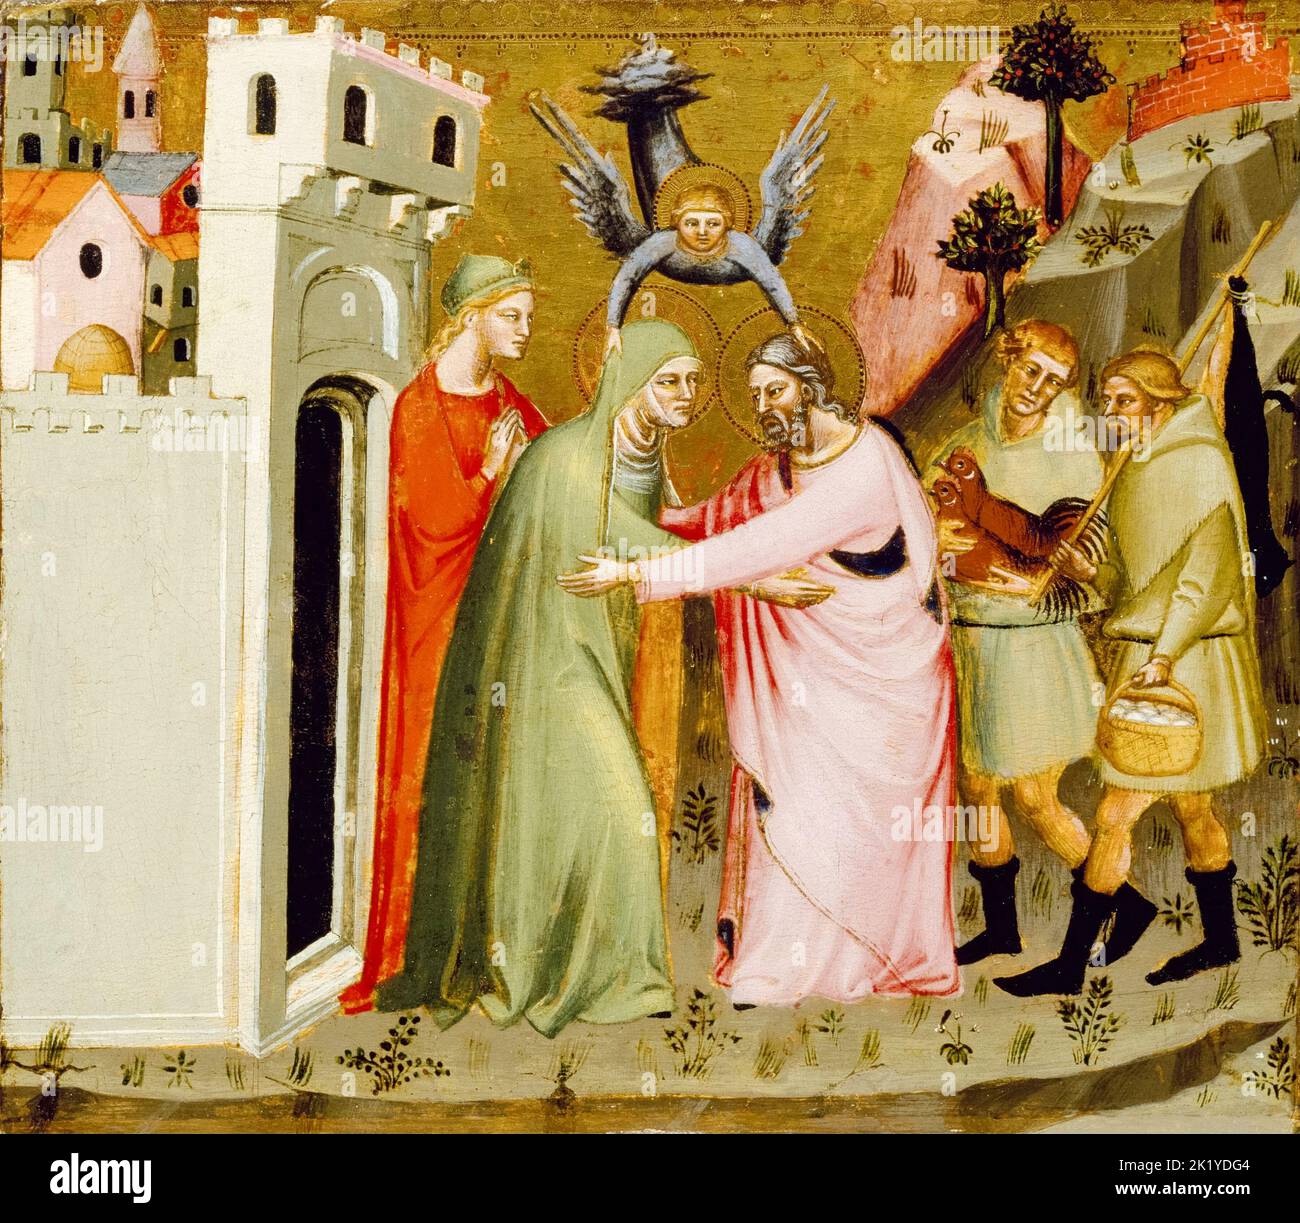 El Encuentro de Ana y Joachim en la Puerta Dorada, pintando en temple y hoja de oro sobre madera por el Maestro de la Puerta Dorada, 1370-1390 Foto de stock